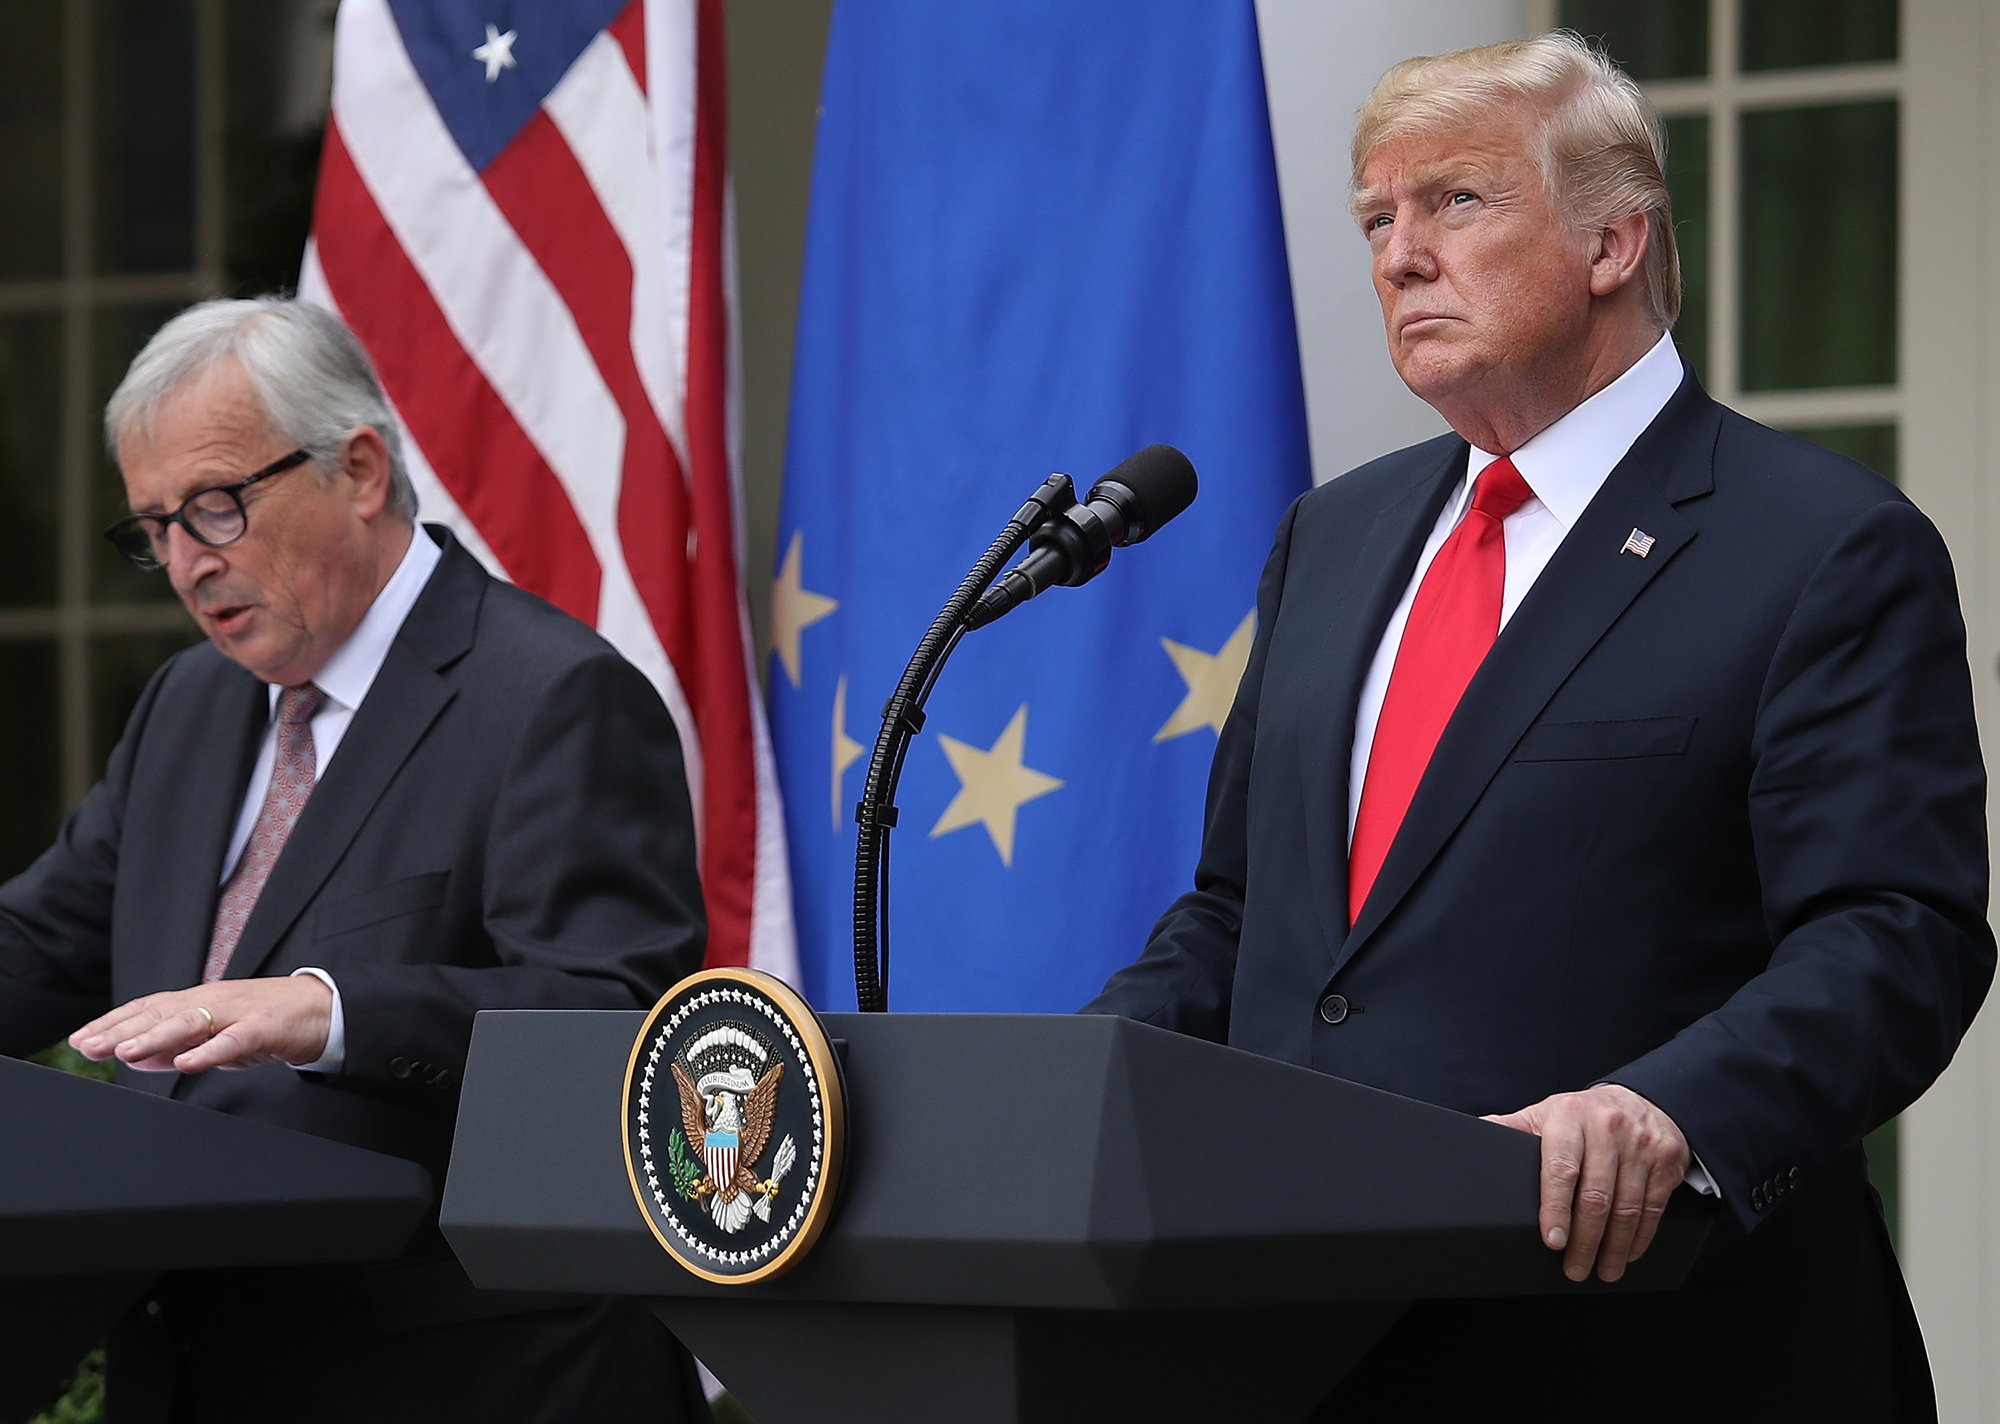 Voorzitter van de Europese Commissie Jean-Claude Junker ontmoet Donald Trump. Foto: Win McNamee/Getty Images